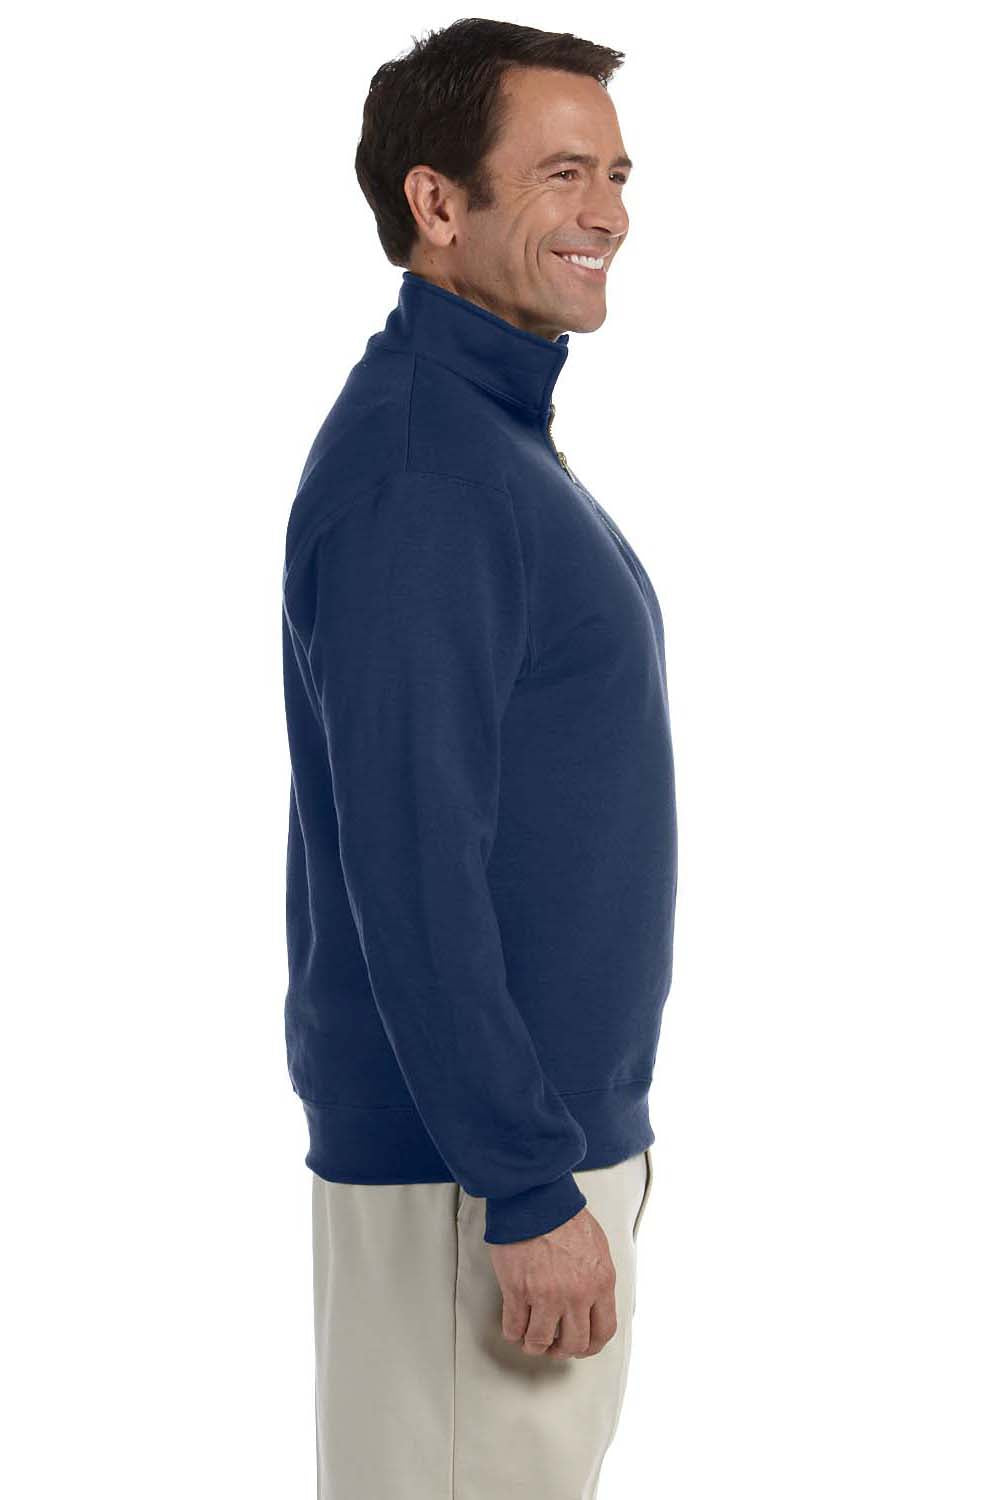 Jerzees 4528 Mens Super Sweats NuBlend Fleece 1/4 Zip Sweatshirt Navy Blue Side